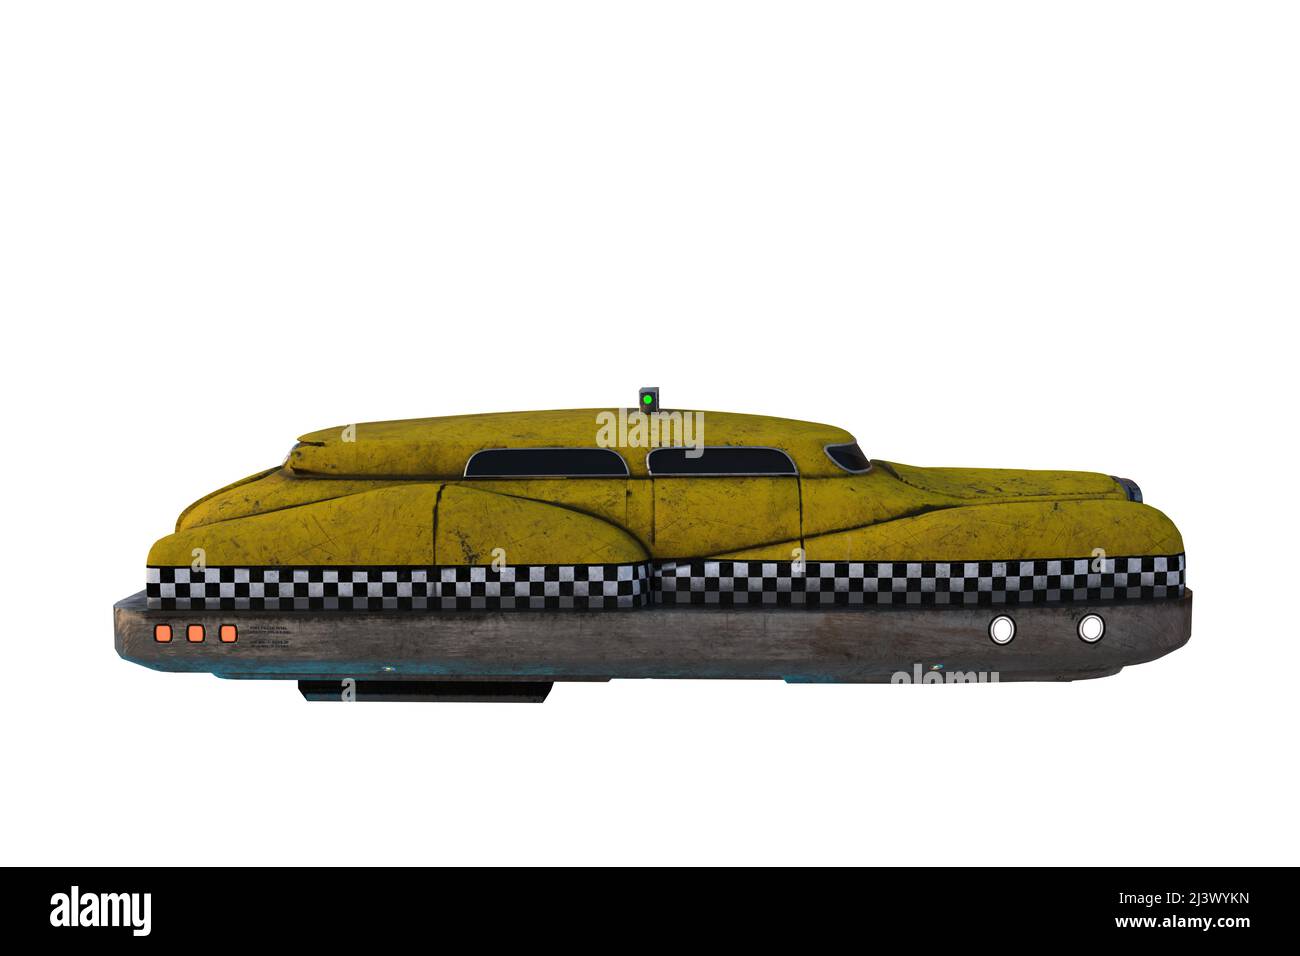 Volo futuristico taxi giallo fantascienza cyberpunk. Vista laterale, illustrazione 3D isolata su sfondo bianco con tracciato di ritaglio. Foto Stock